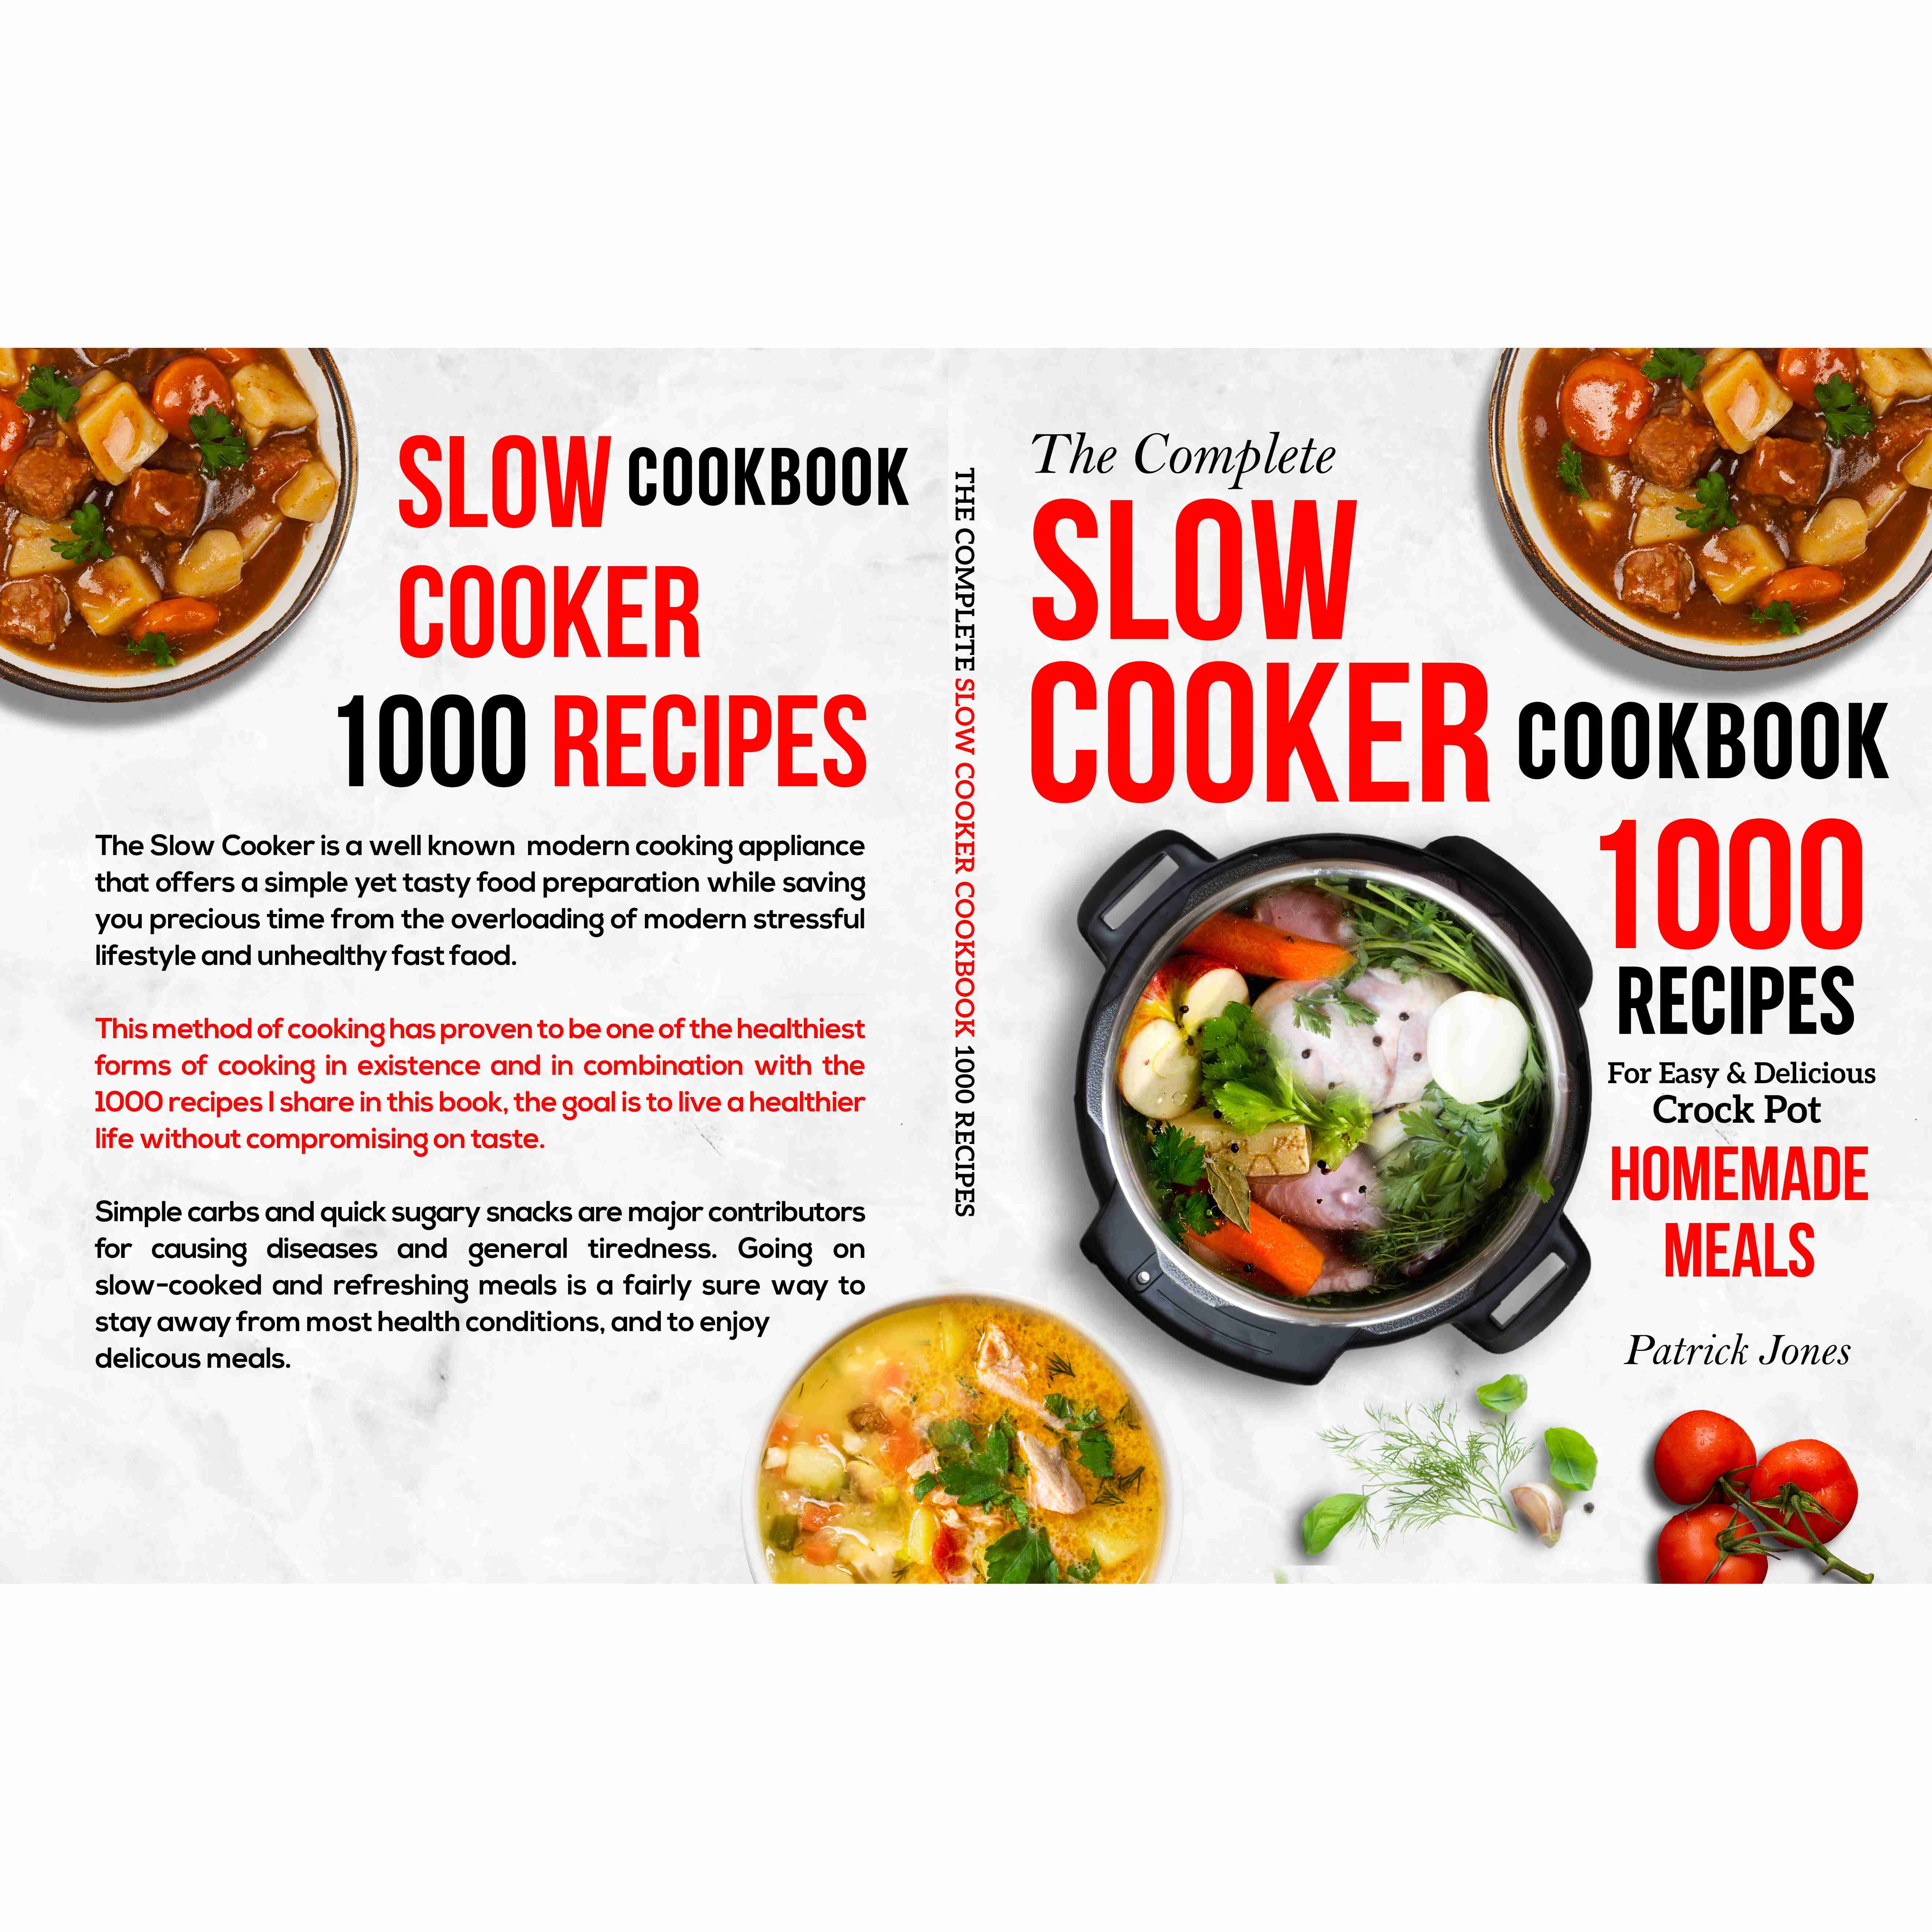 slow-cooker-cookbook-patrick-jones with discount code